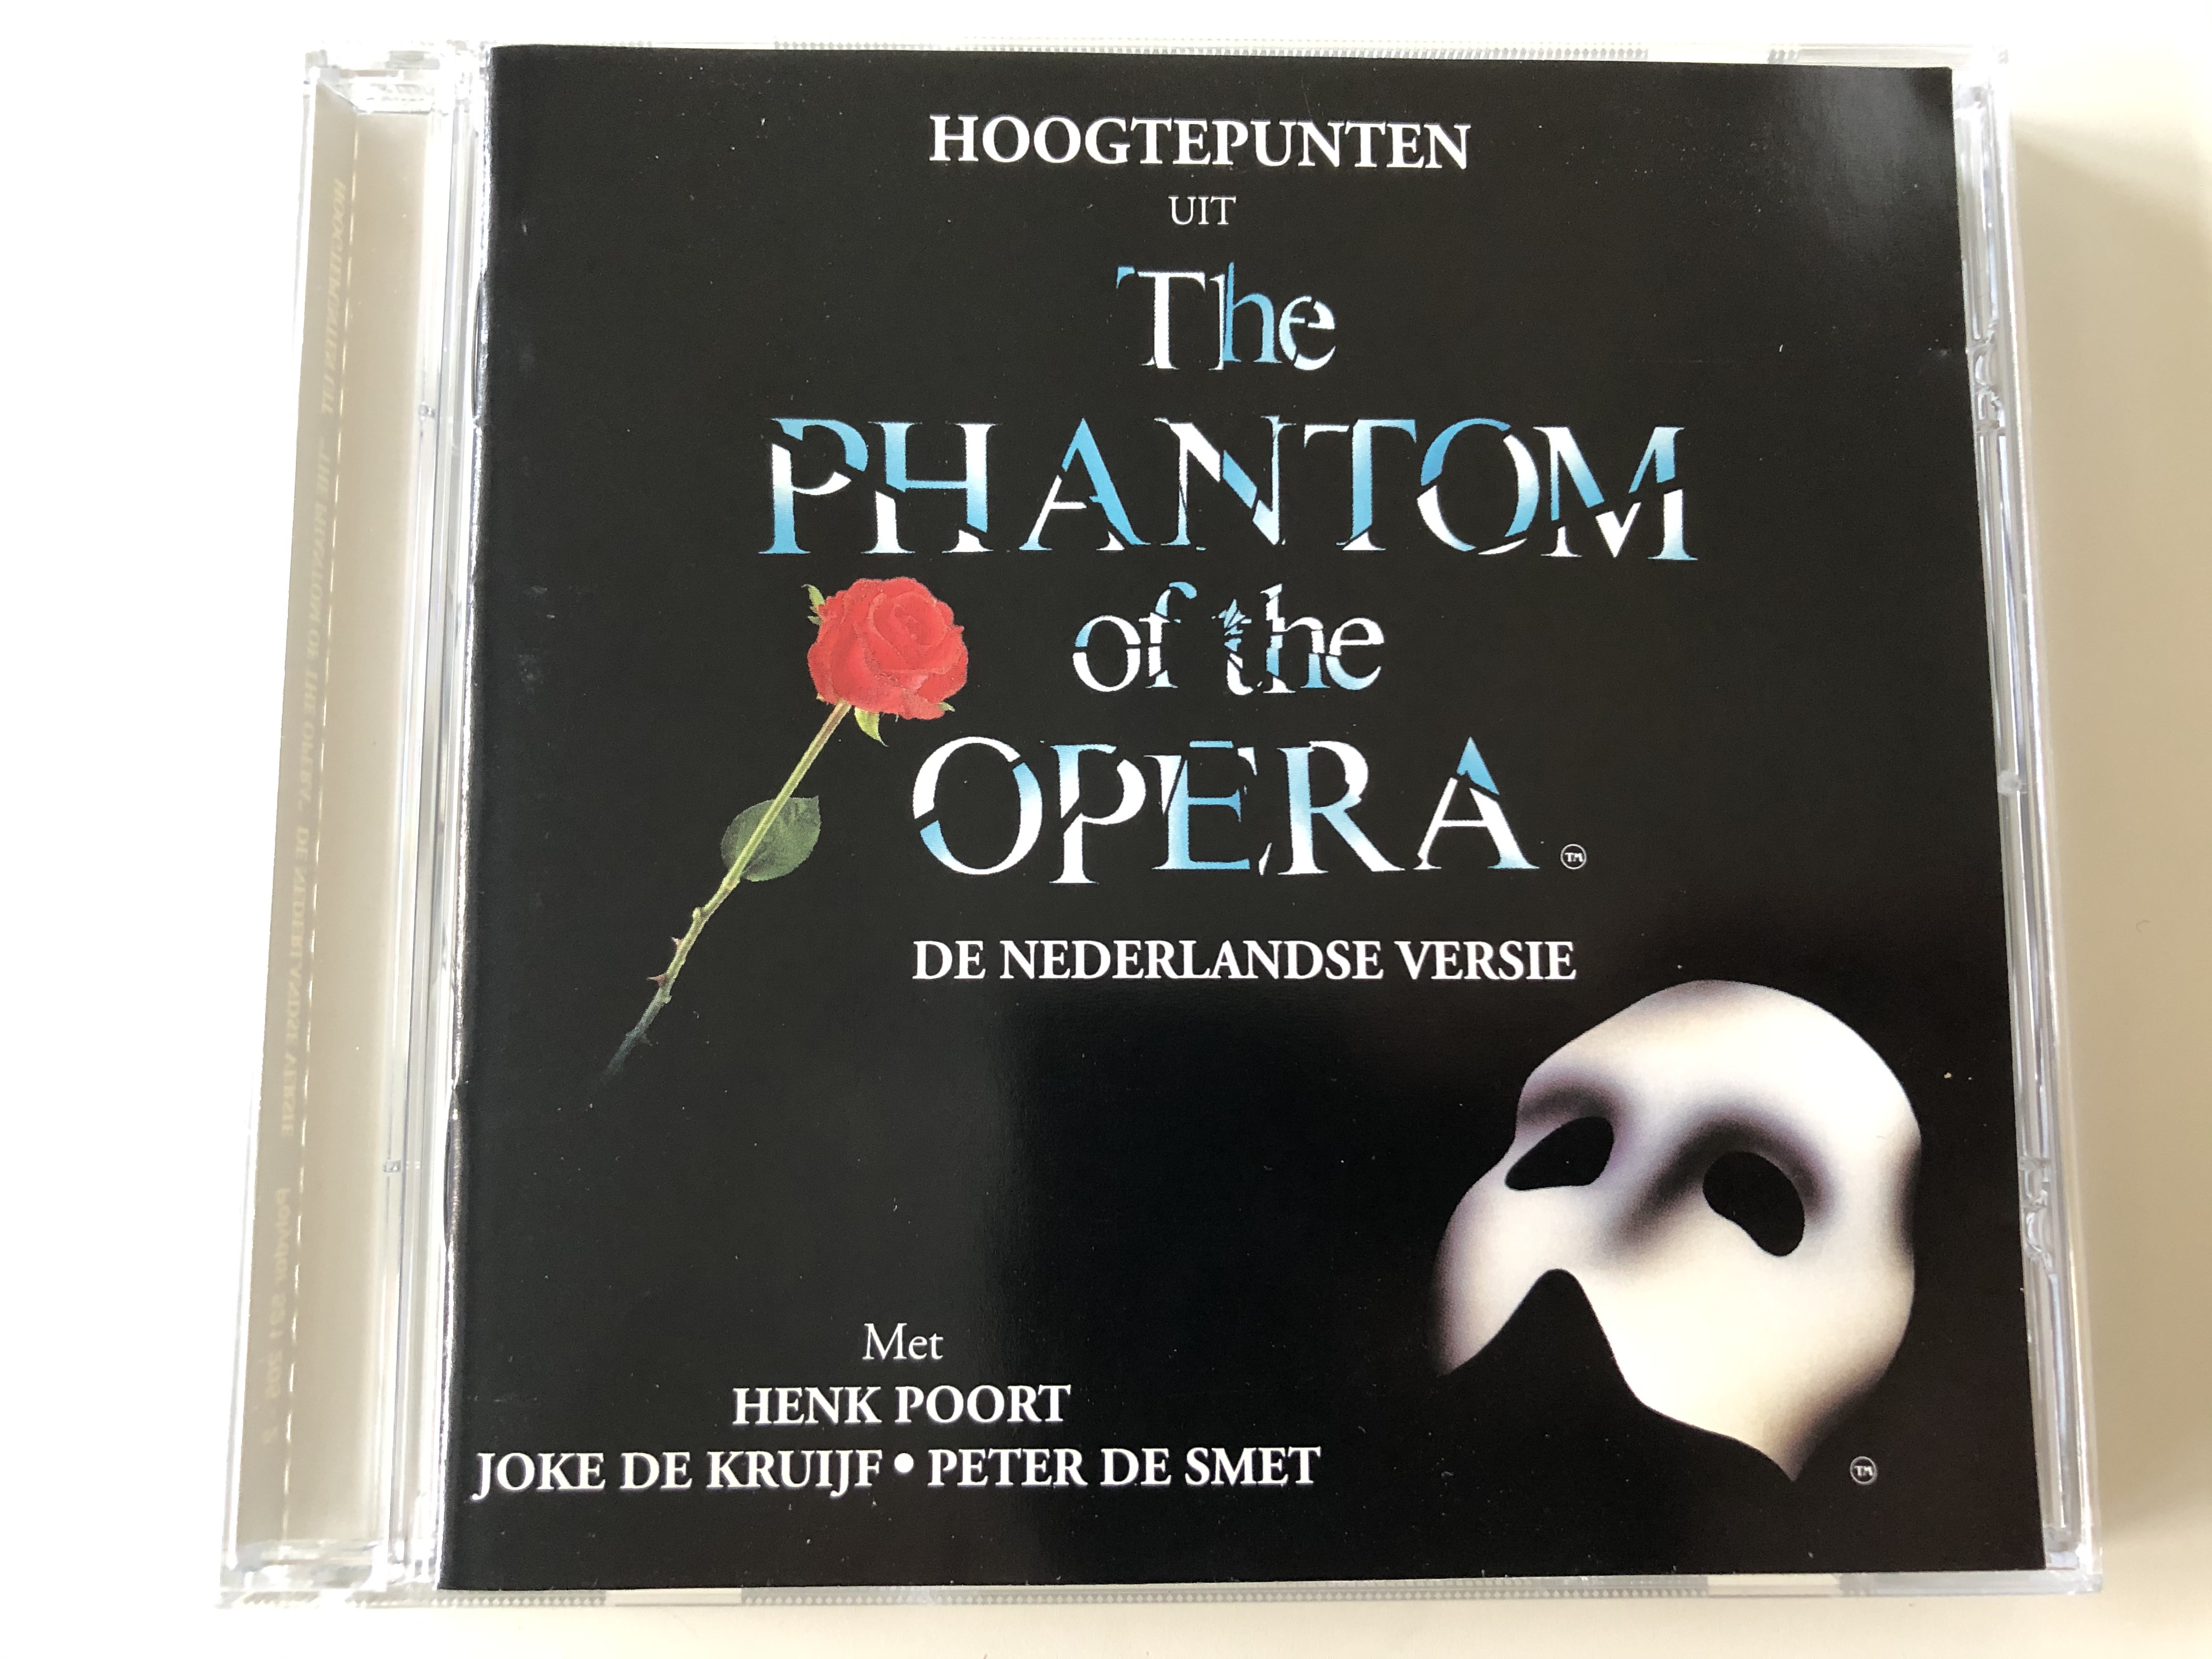 hoogtepunten-uit-the-phantom-of-the-opera-de-nederlandse-versie-mer-henk-poort-joke-de-kruijf-peter-de-smet-polydor-audio-cd-1993-521-205-2-1-.jpg